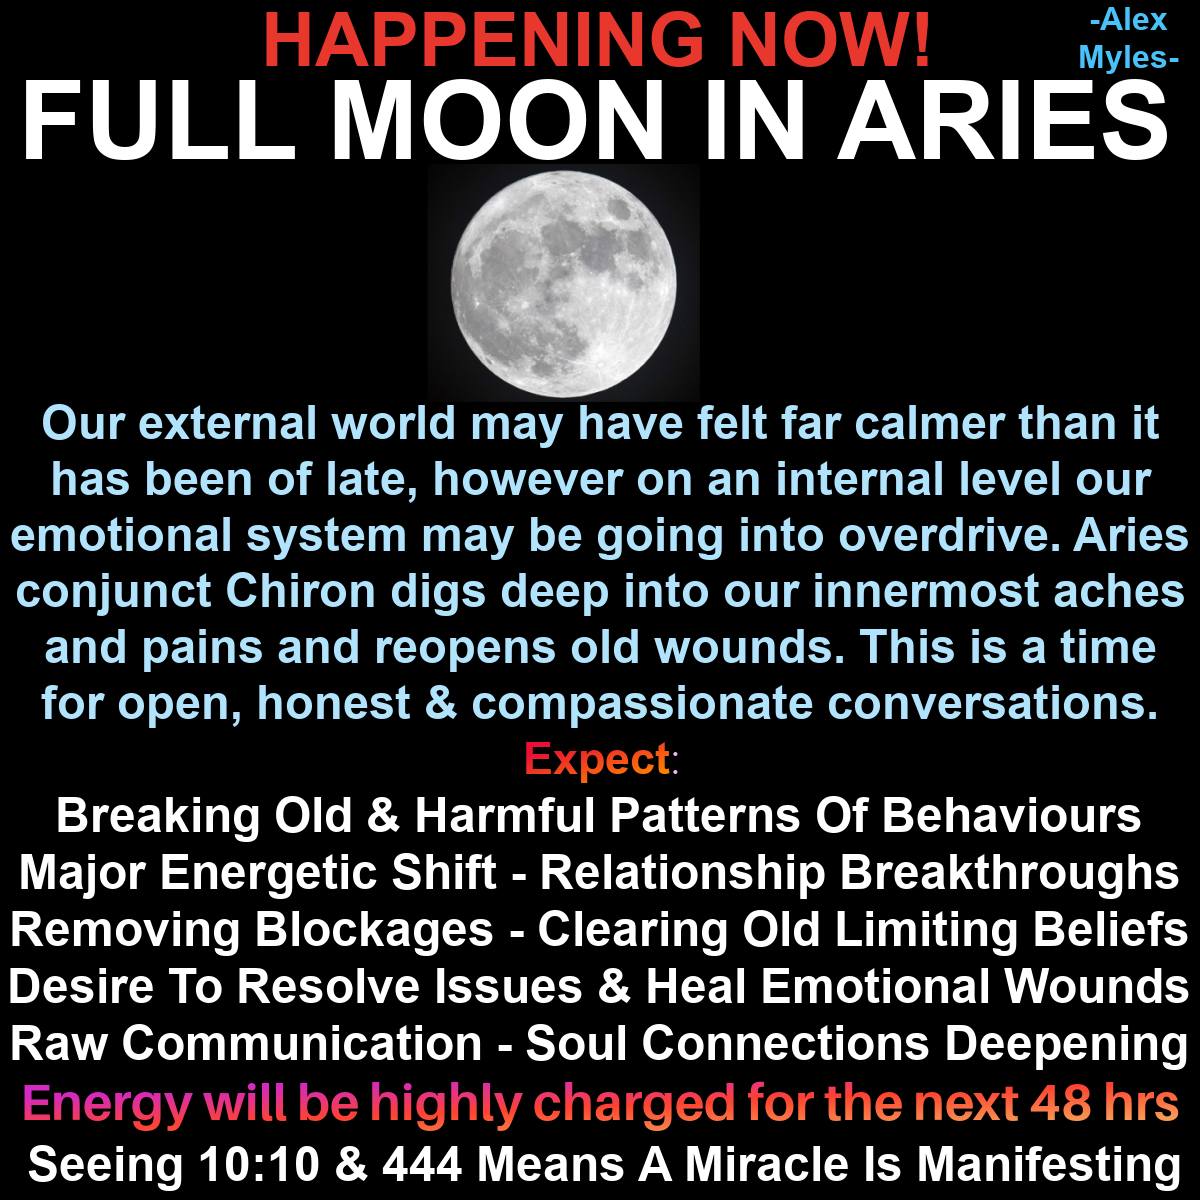 Moon in Aries